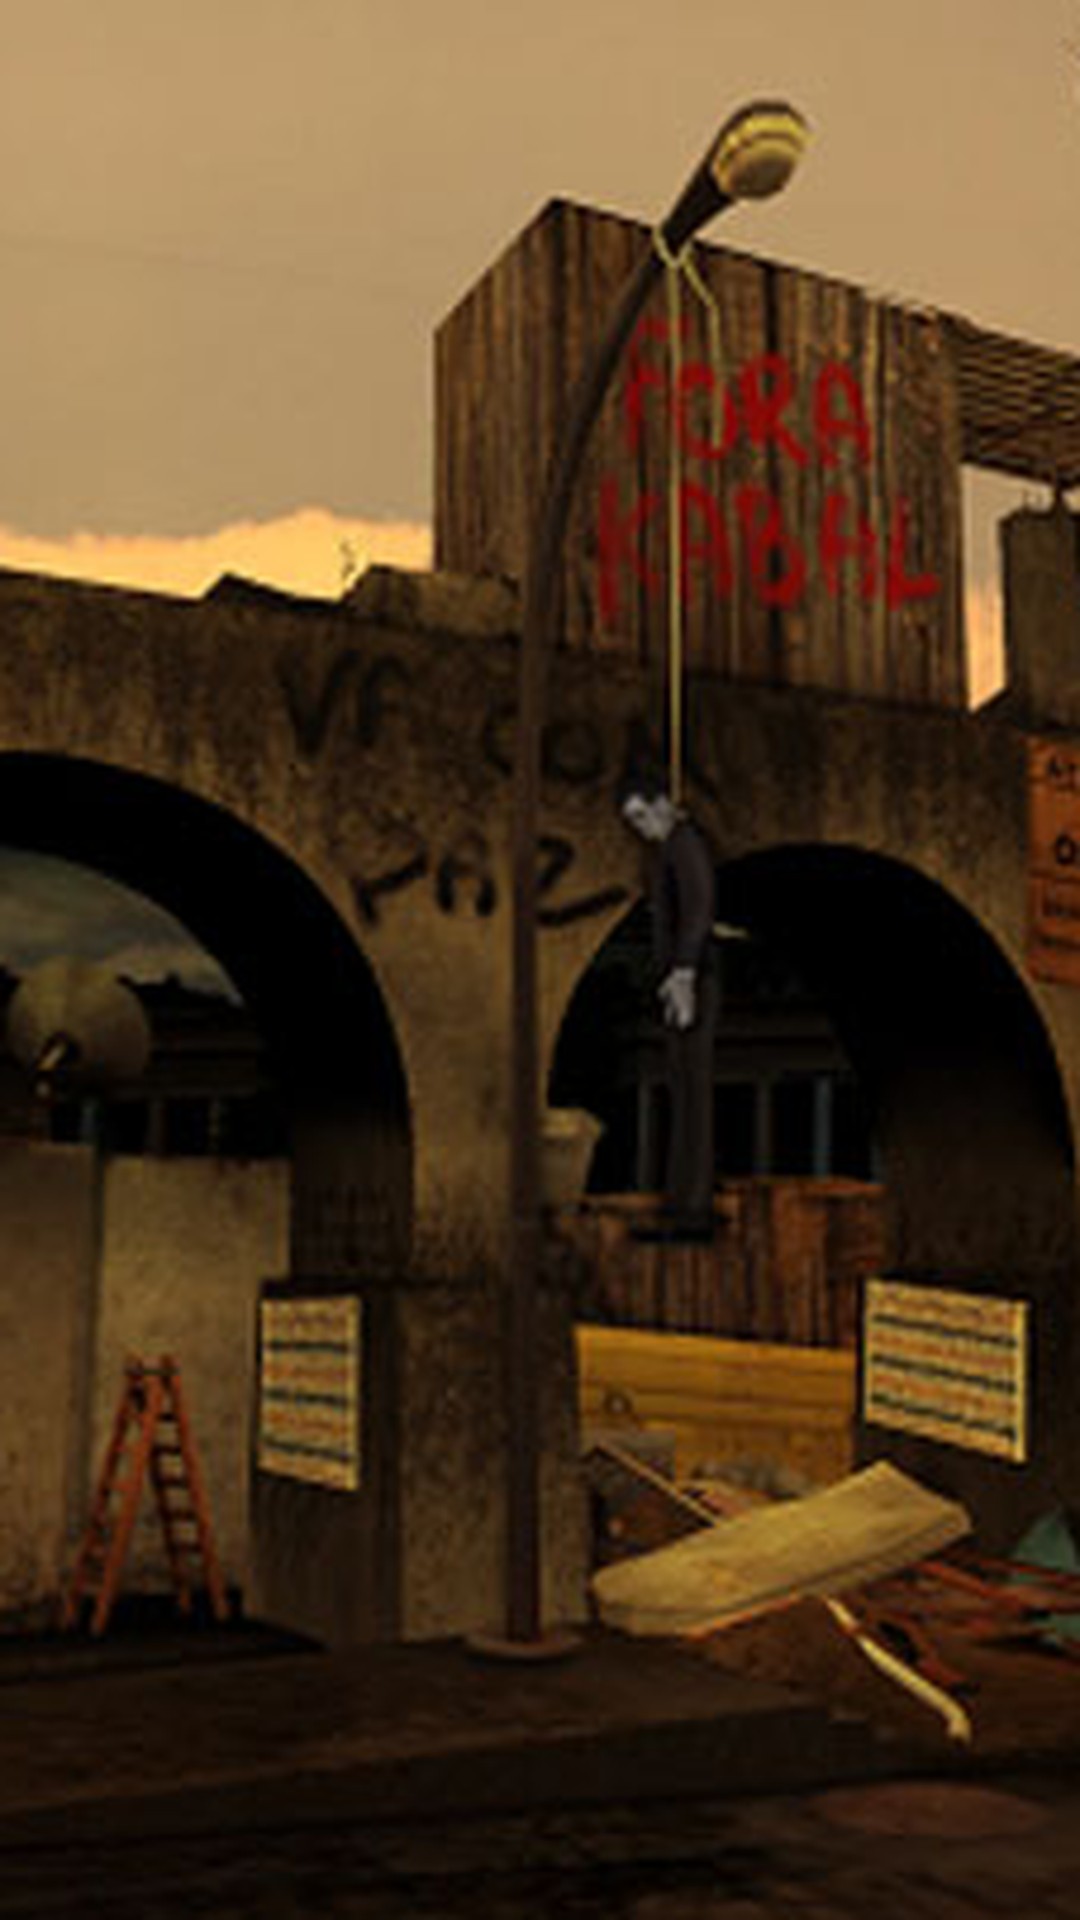 Versão de jogo online com favelas cariocas faz sucesso simulando guerra de  facções - Casos de Polícia - Extra Online